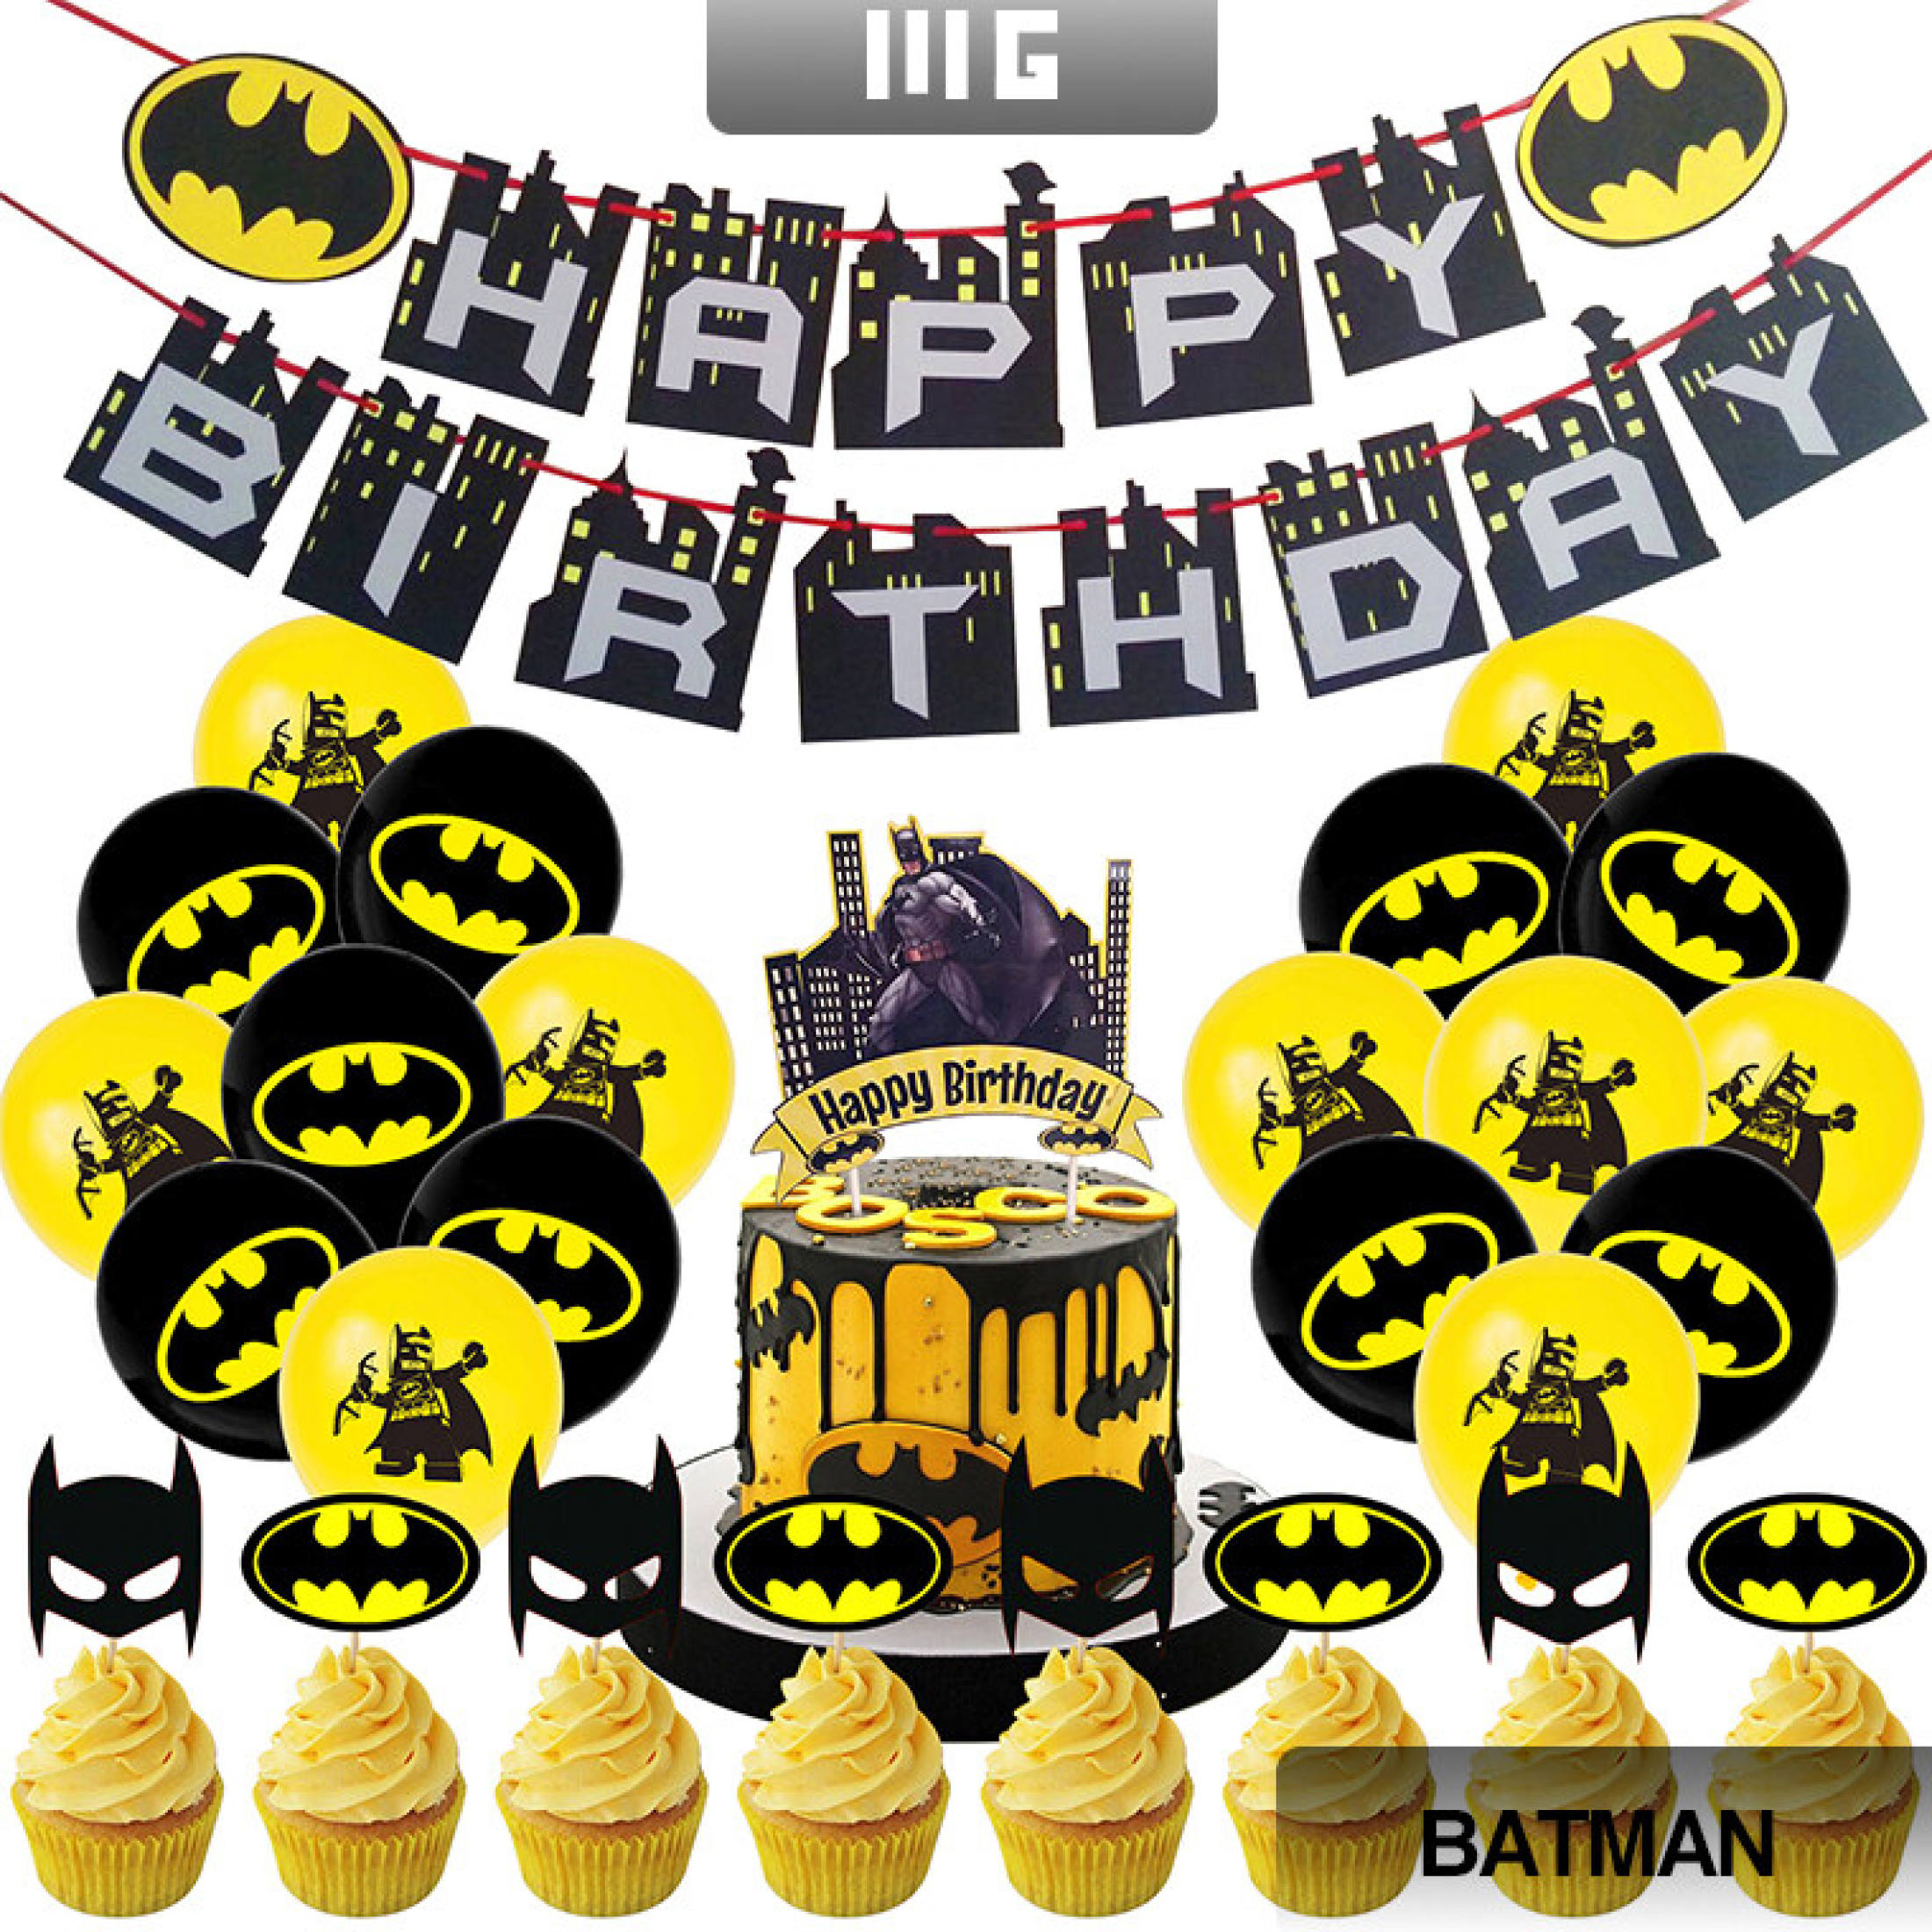 Batman Petite size cupcakes 12 pack | Vanilla Cupcakery